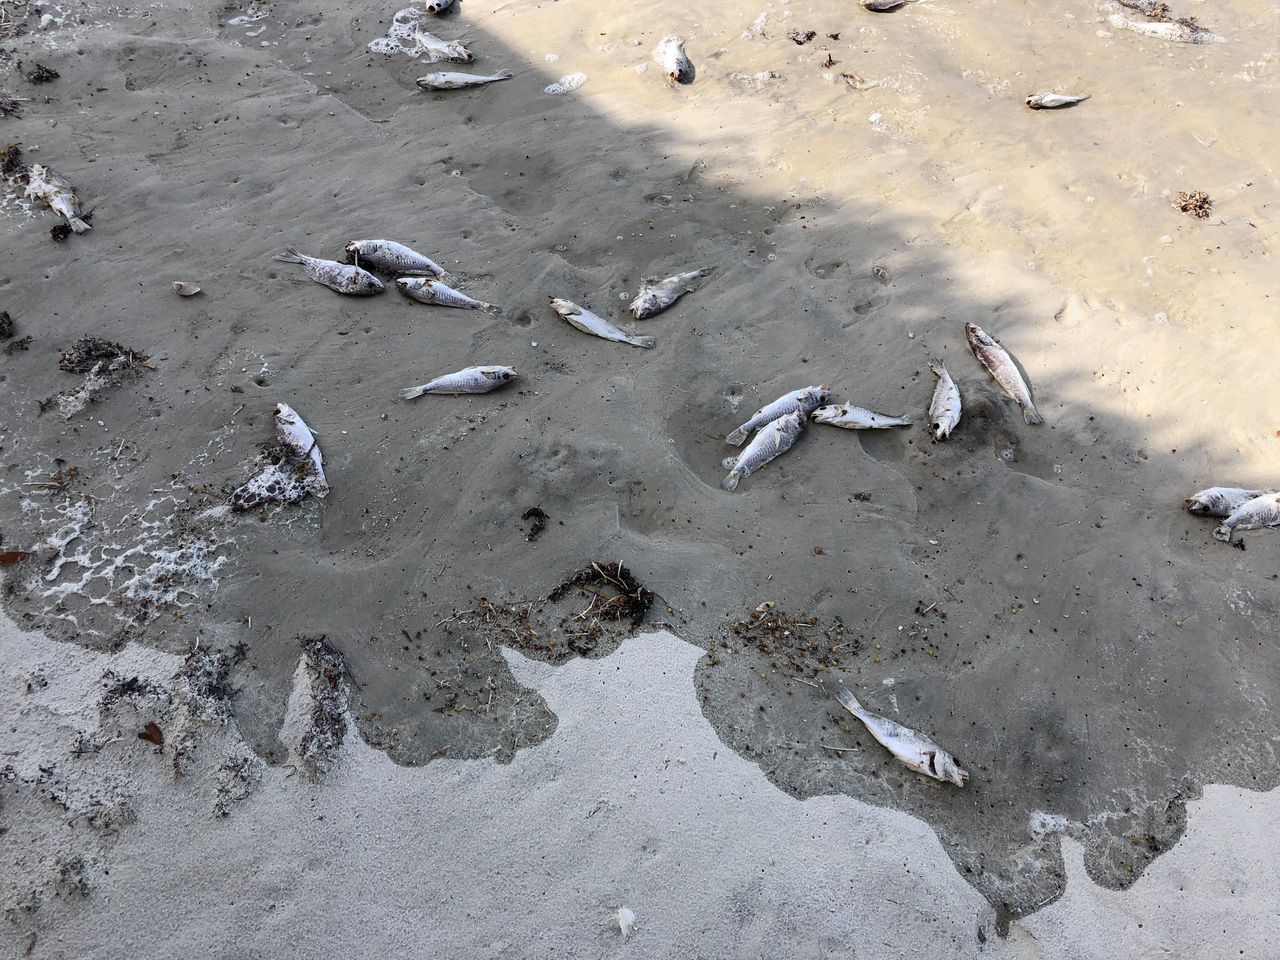 Daytona Beach is bezaaid met dode visjes.